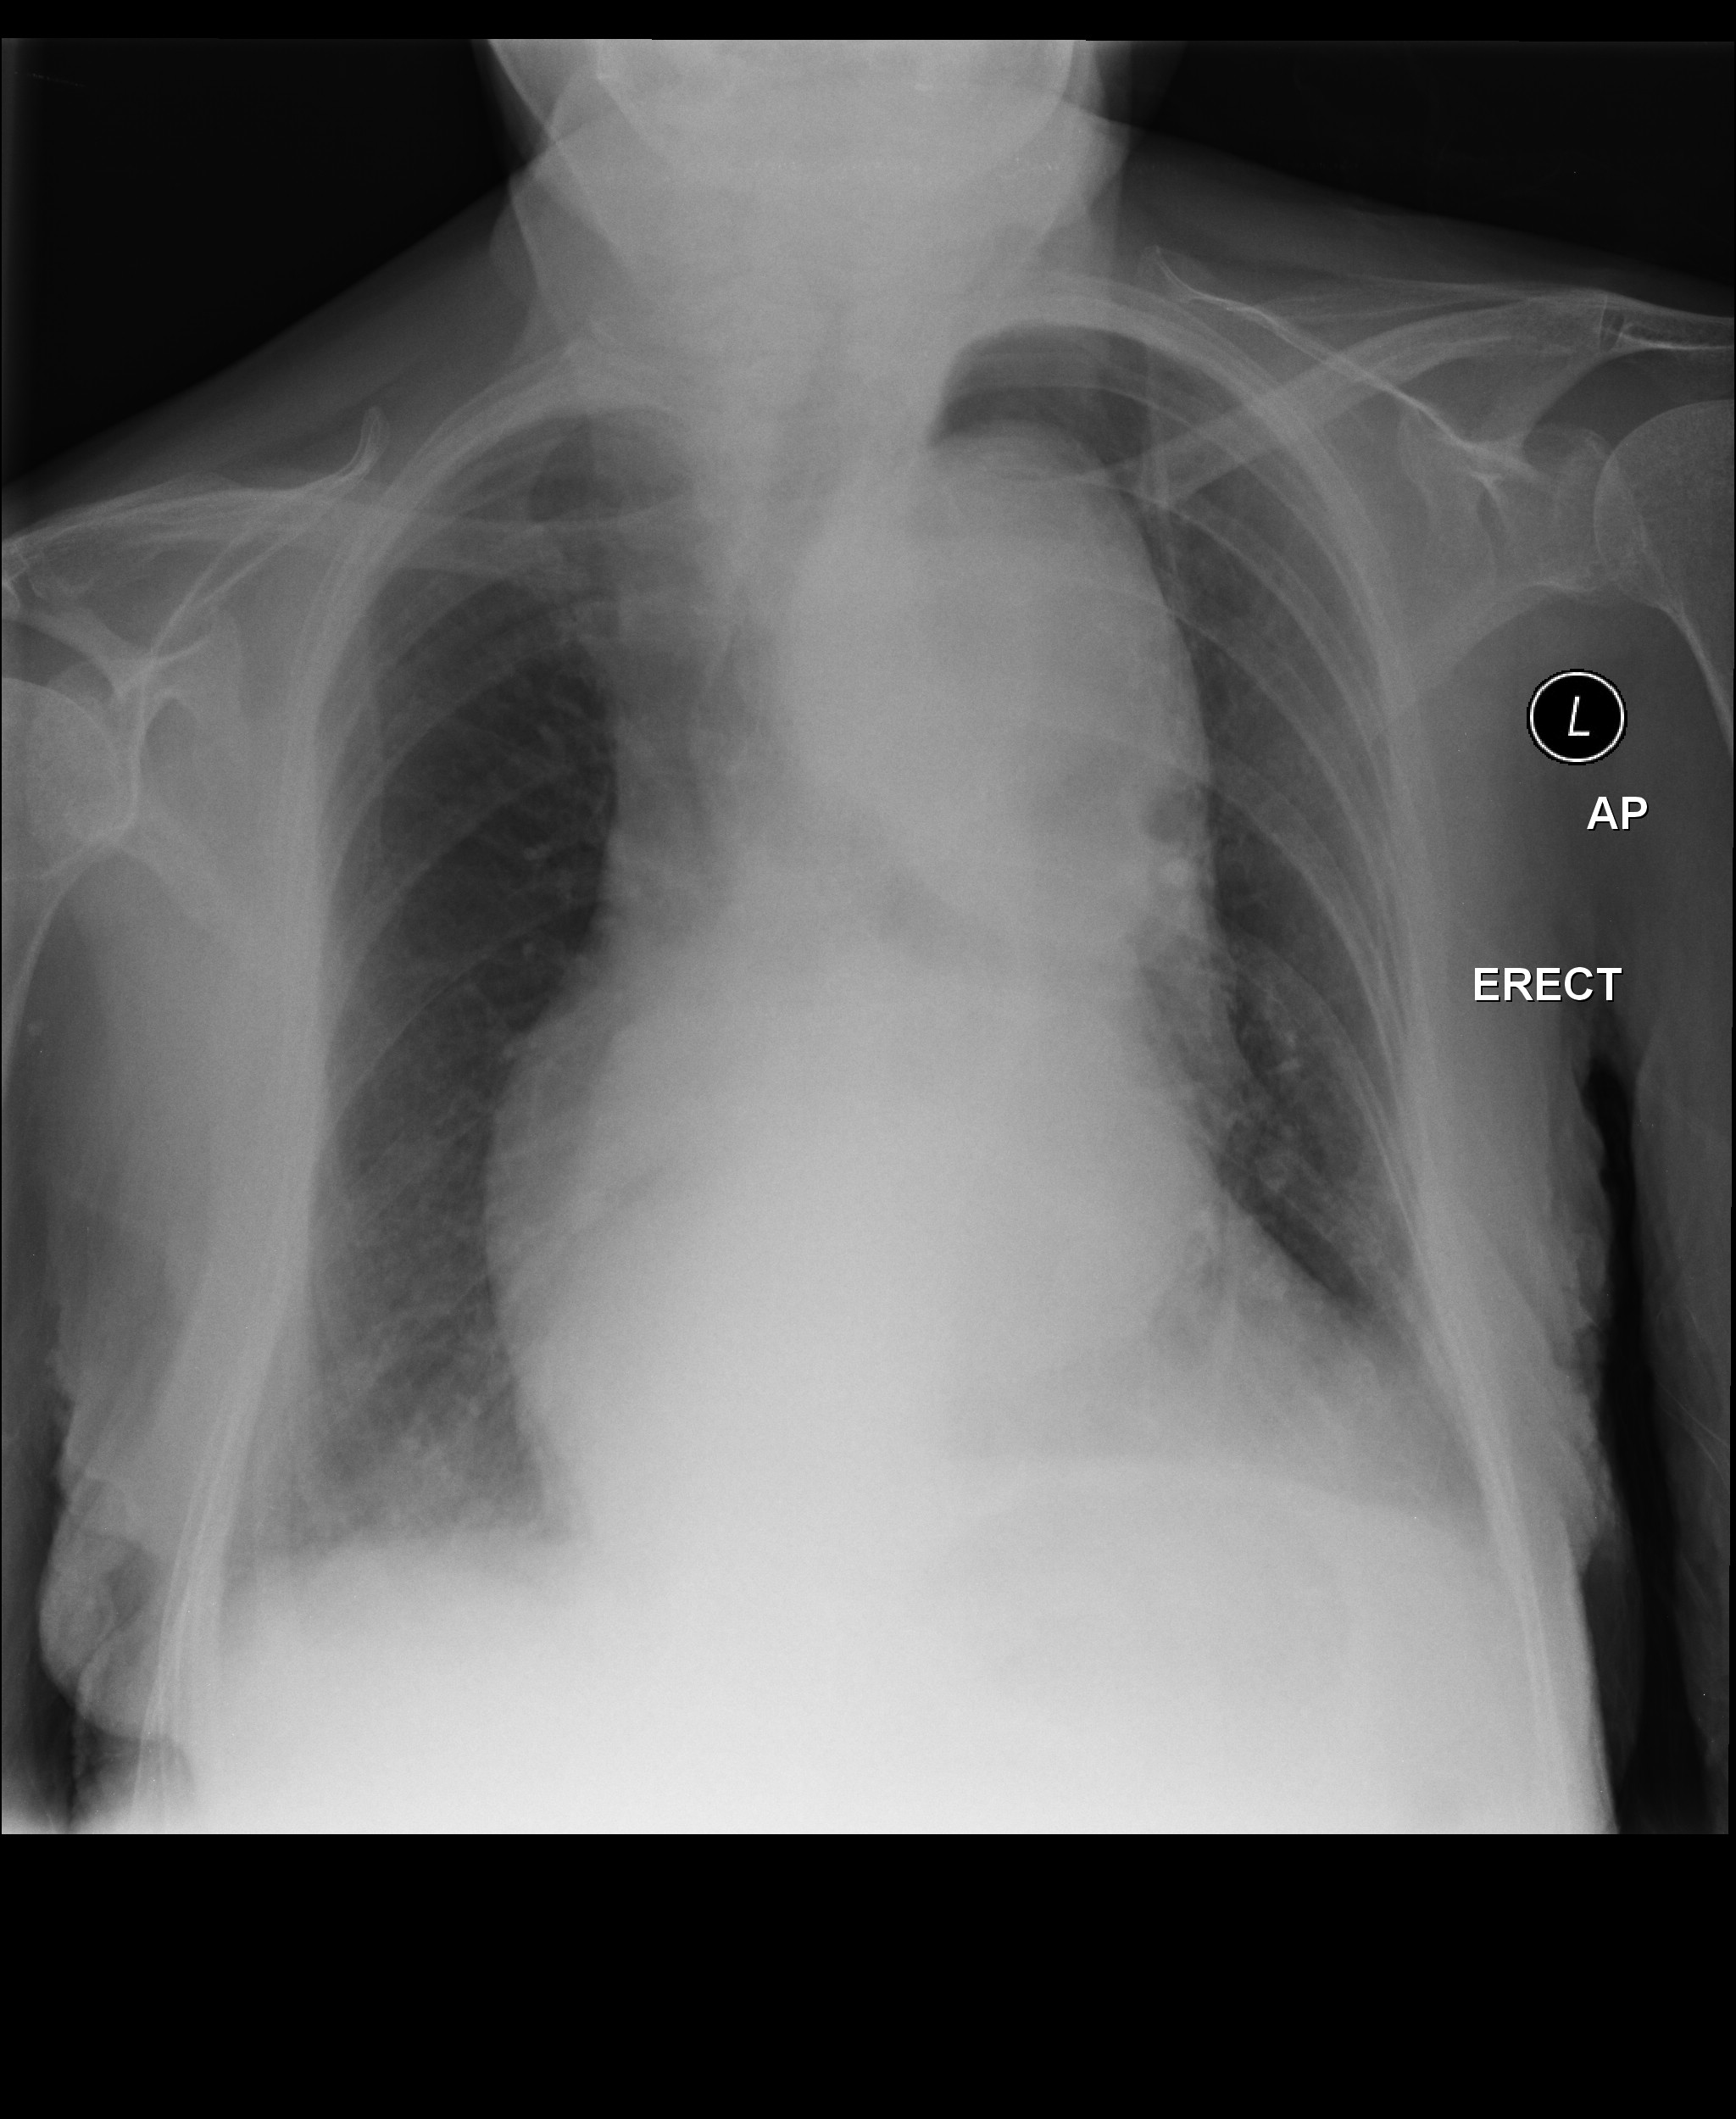 File:Thoracic-aortic-aneurysm-16.jpg